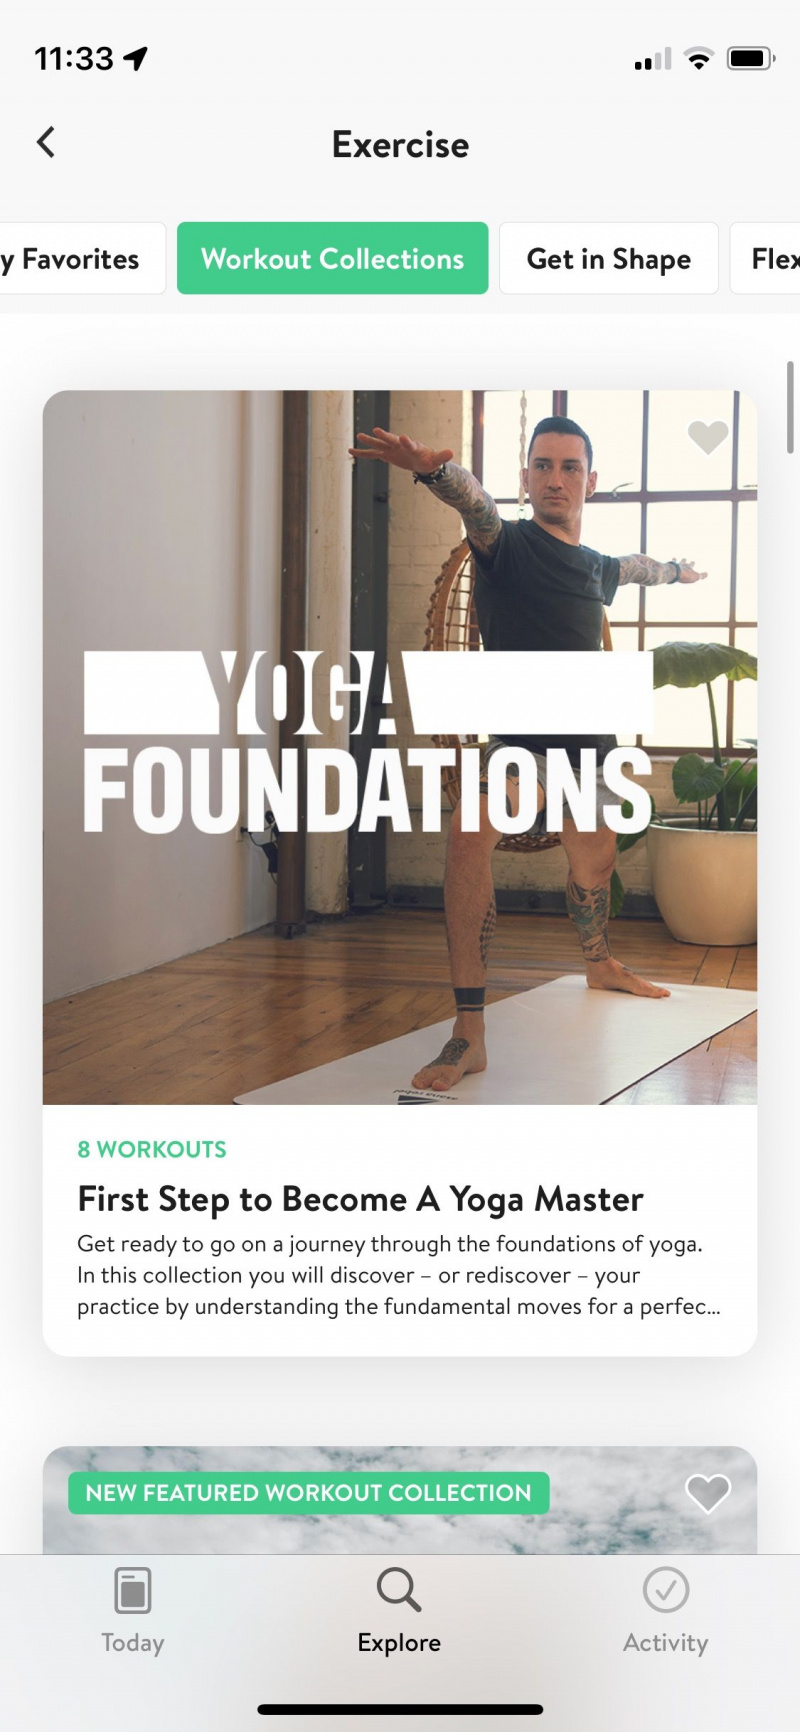   Captura de pantalla de la aplicación Asana Rebel que muestra el curso Fundamentos del yoga